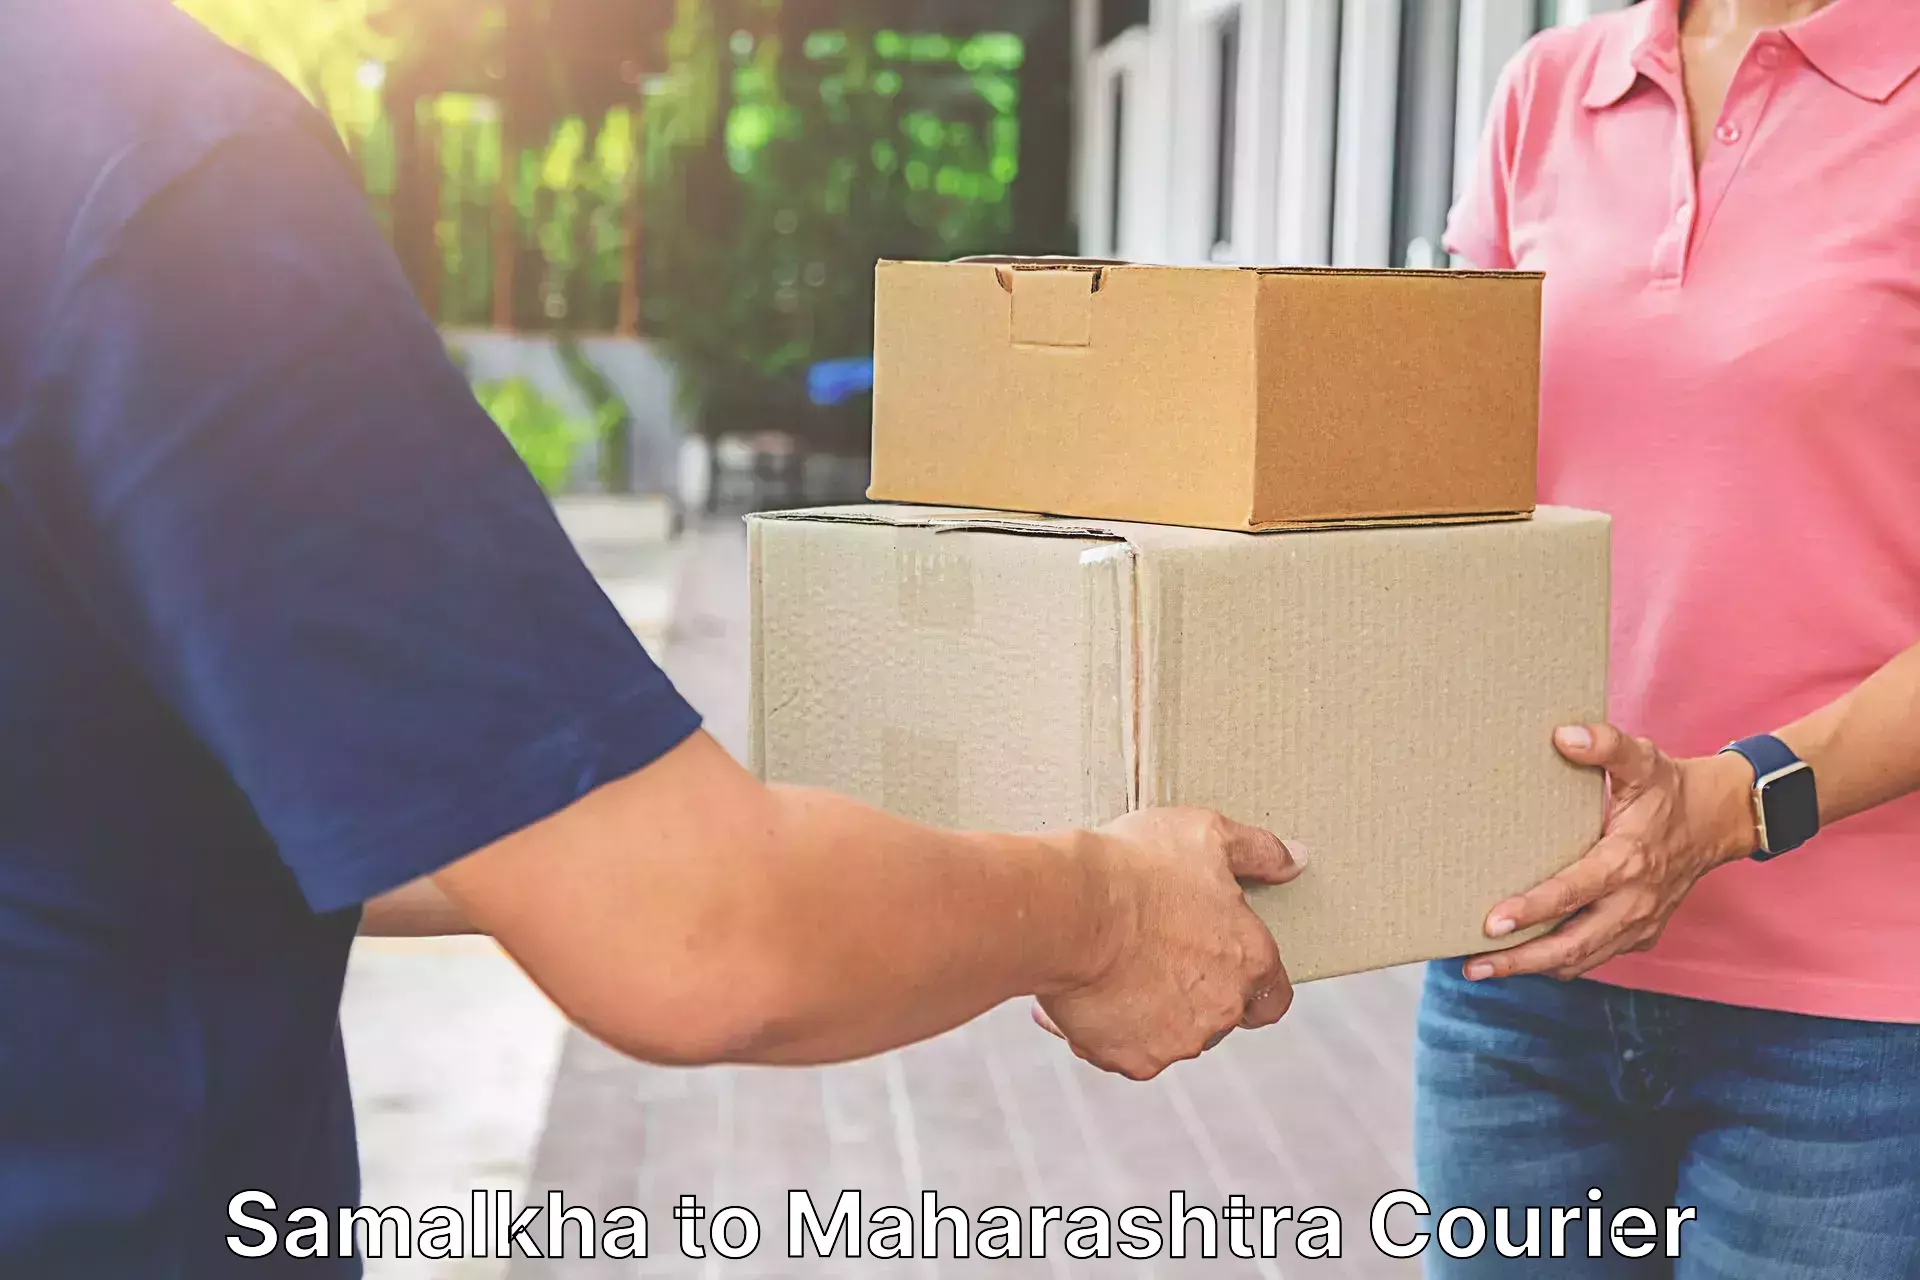 User-friendly courier app Samalkha to Maharashtra